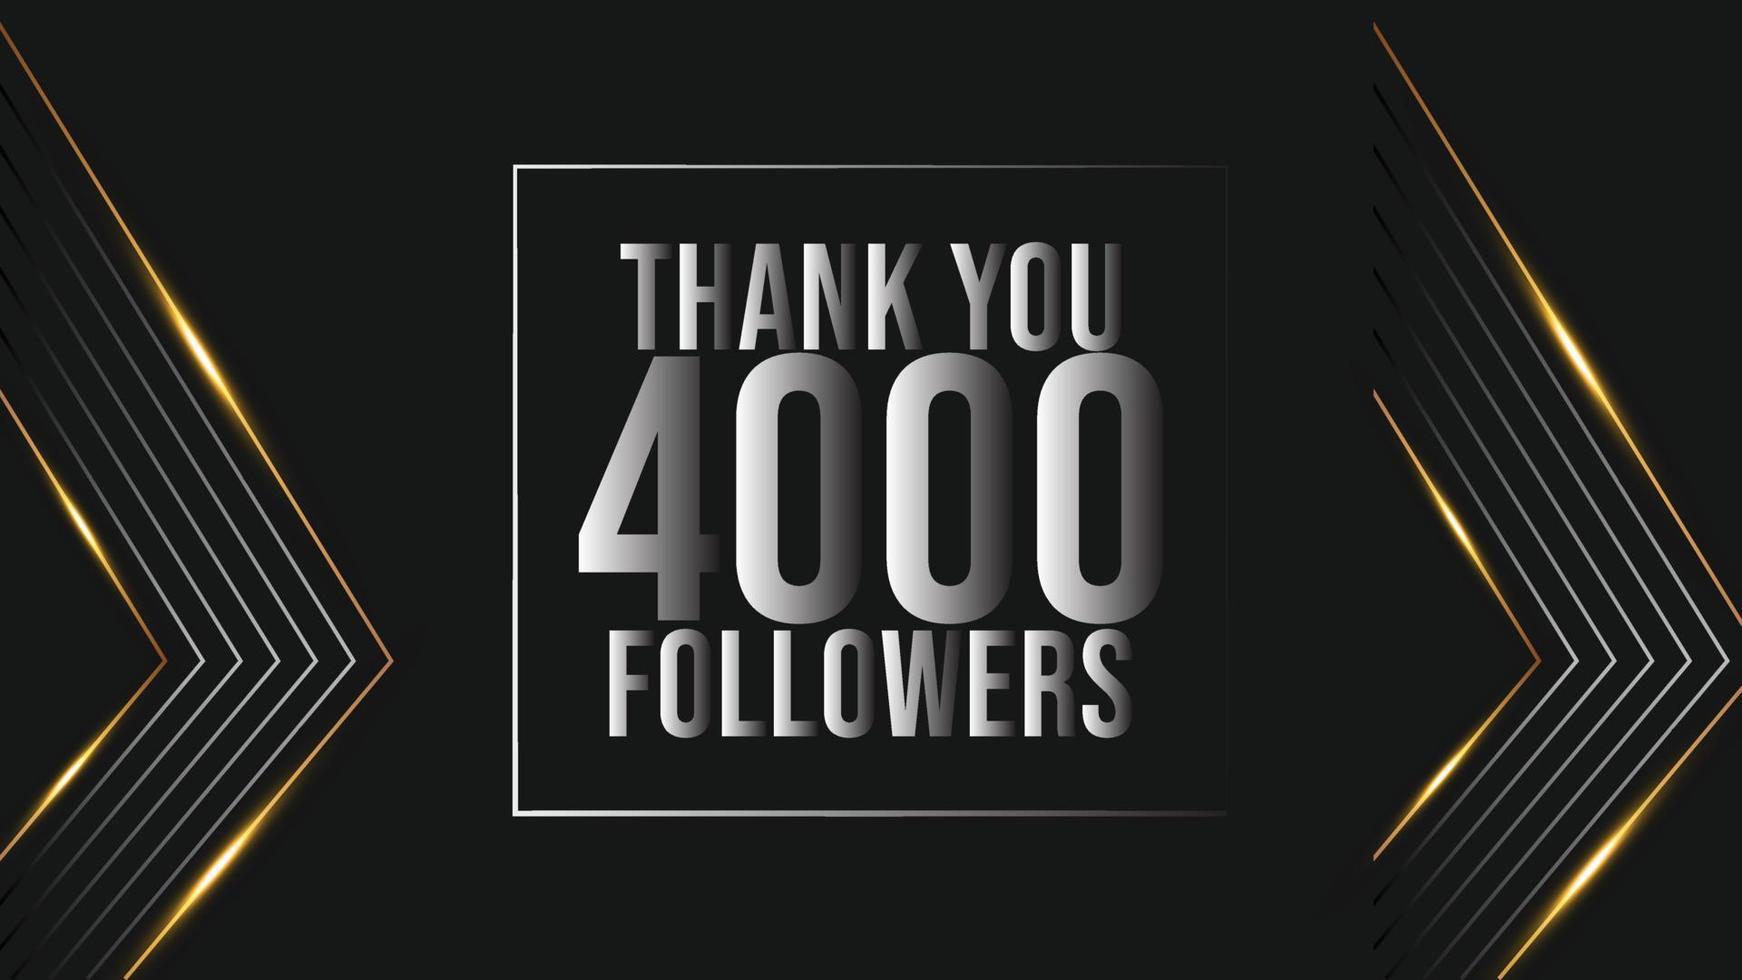 viering 4000 abonnees sjabloon voor sociaal media. 4k volgers dank u vector